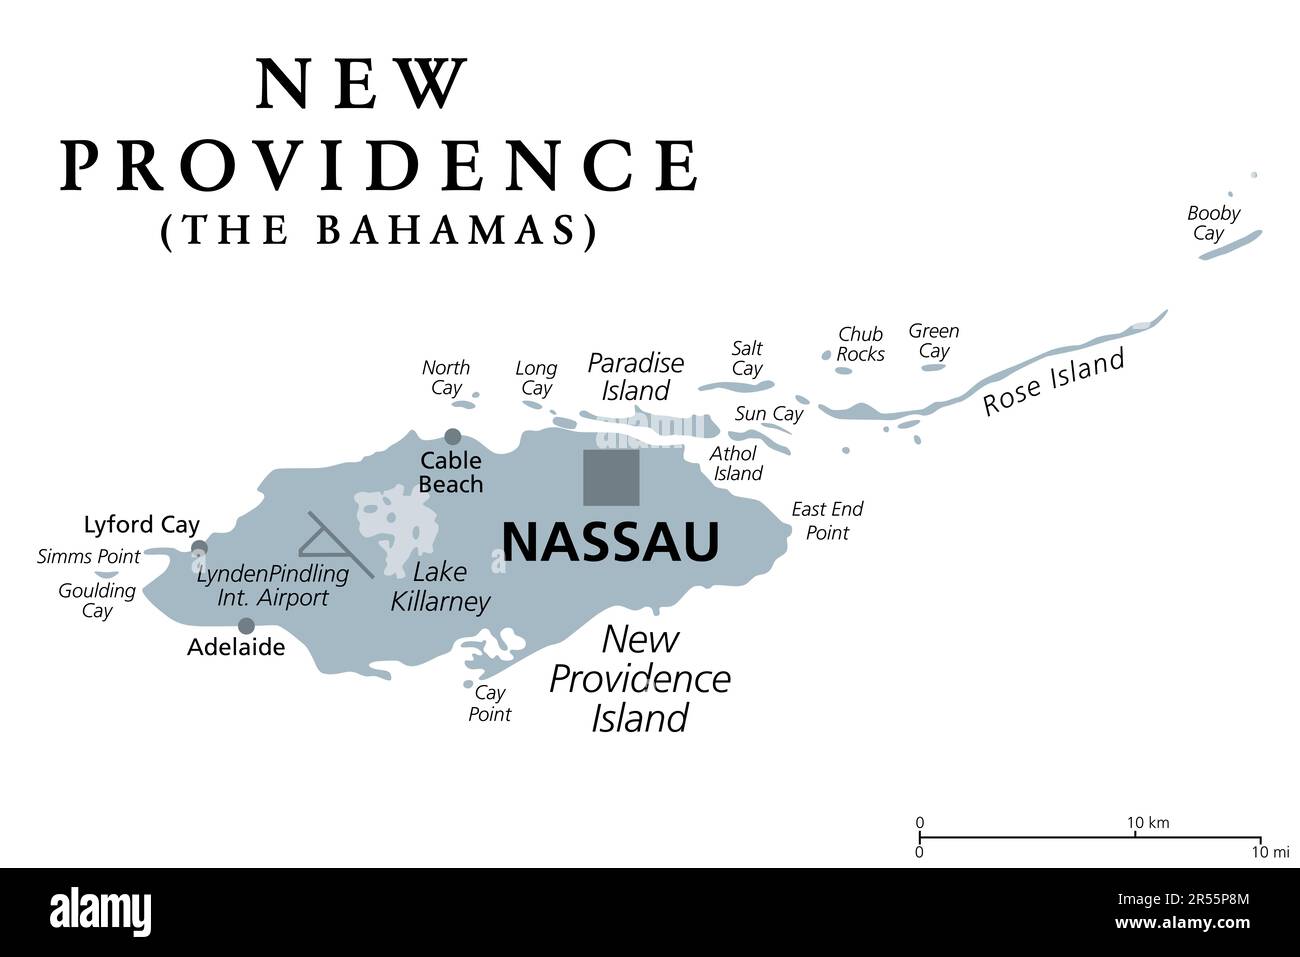 New Providence Island, graue politische Karte, mit Nassau, Hauptstadt der Bahamas, einem Inselland auf den Westindischen Inseln im Nordatlantik. Stockfoto